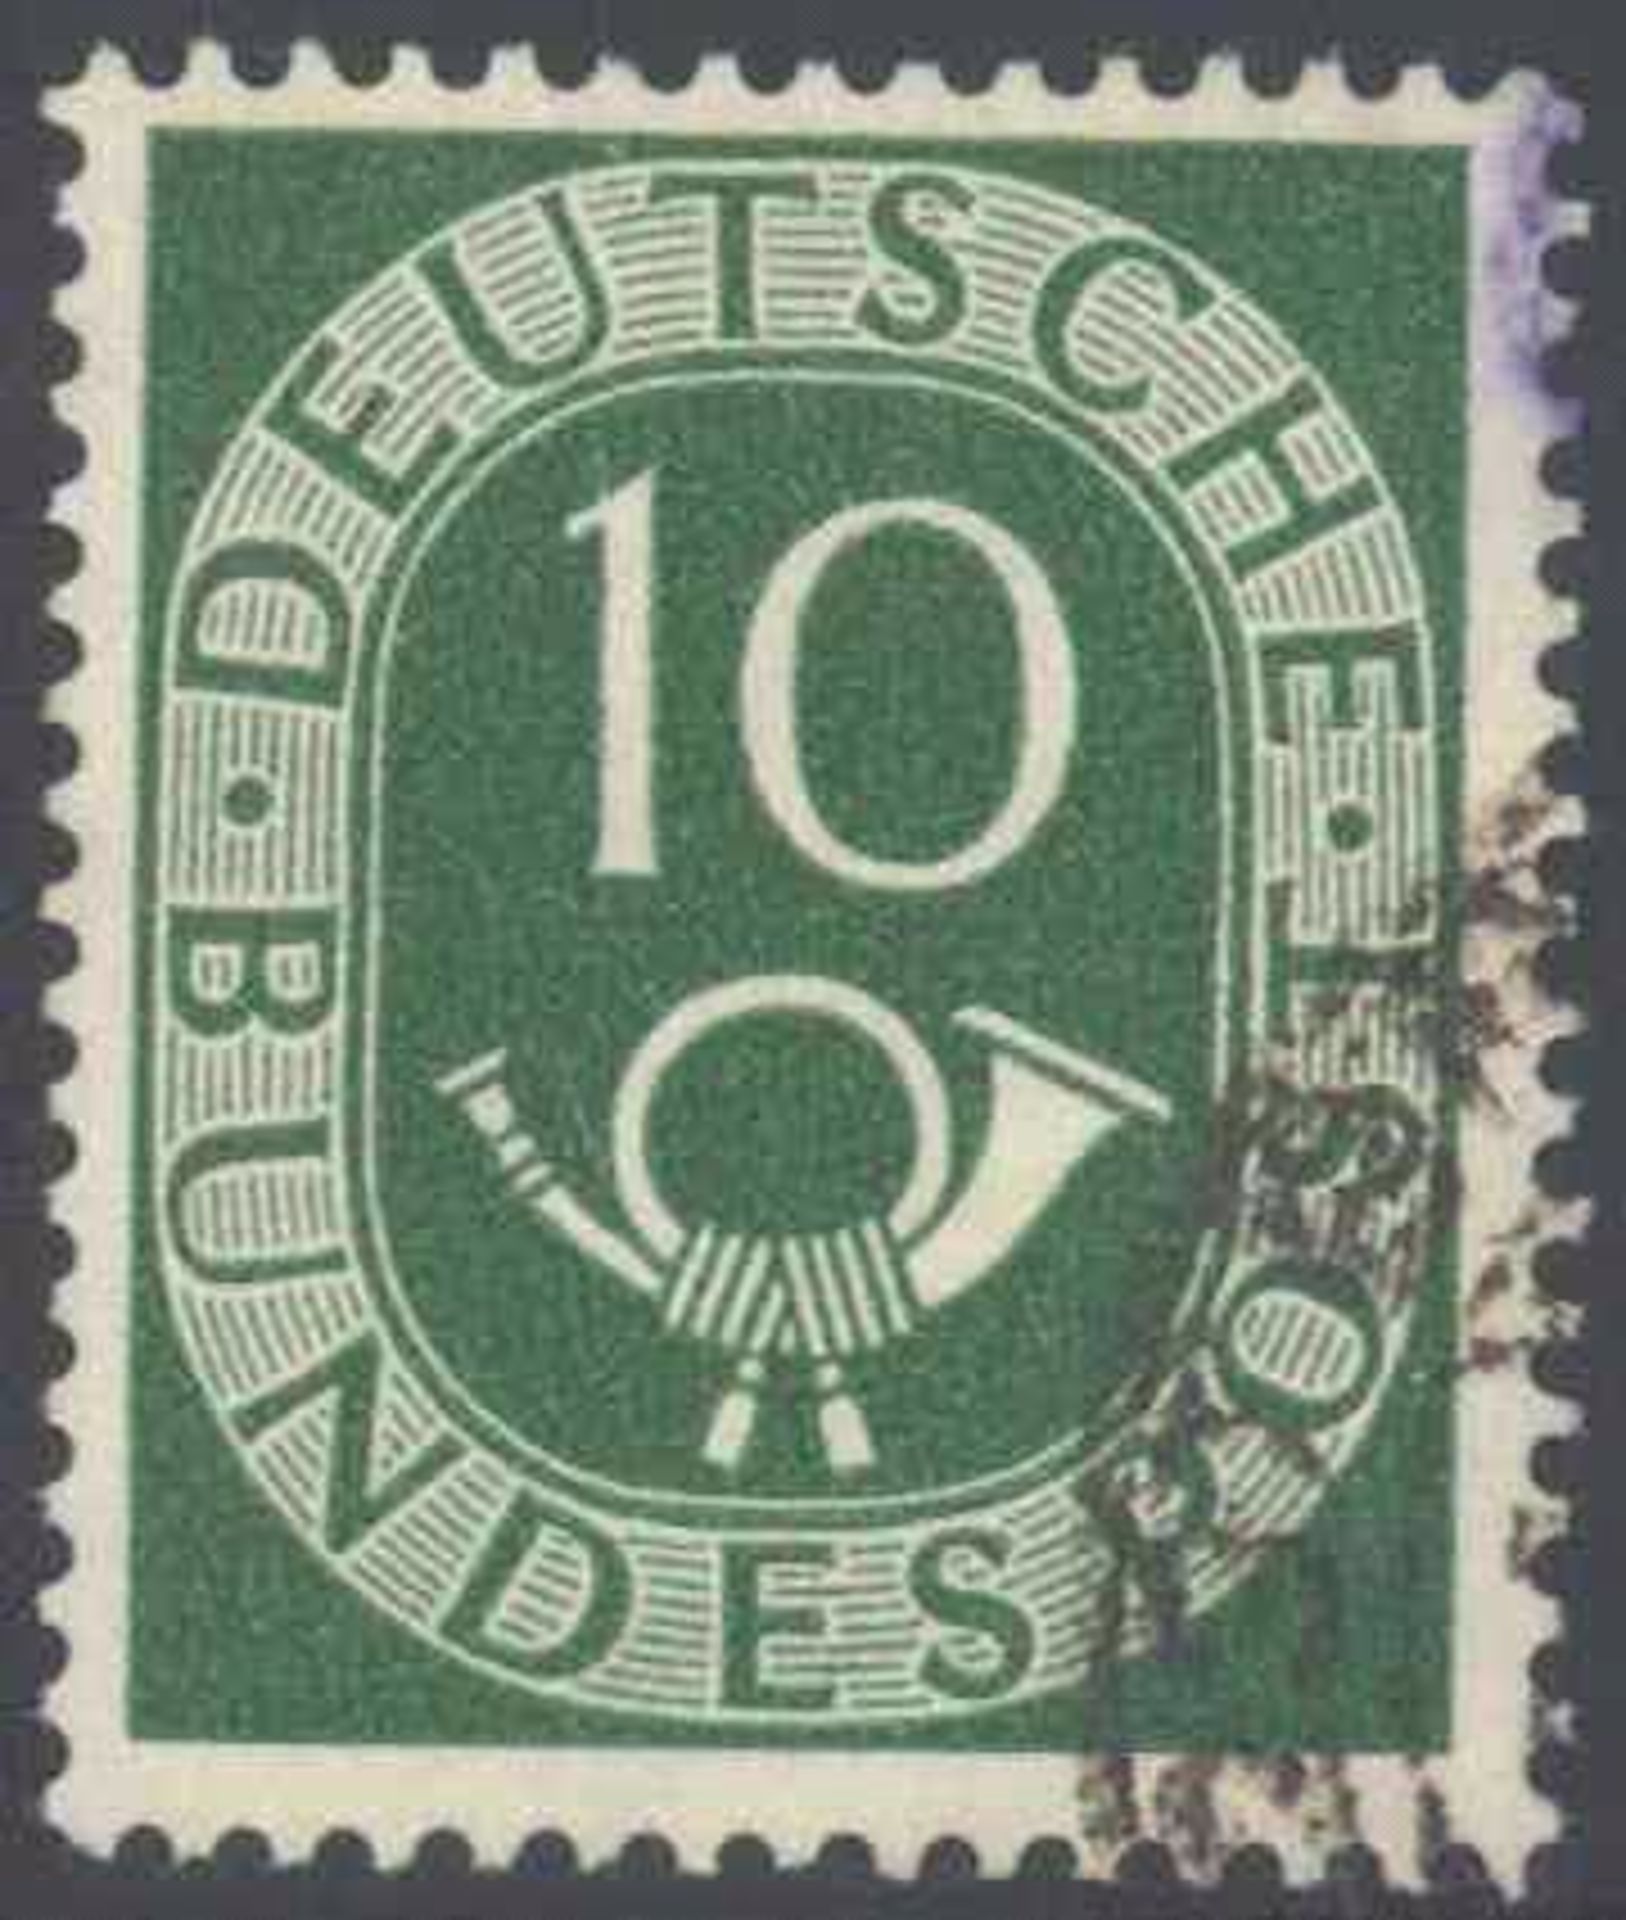 1951 Bund, 10 Pfennig Posthorn mit Plattenfehler IMichelnummer 128 I, "abgeschlagener Bogen des S",